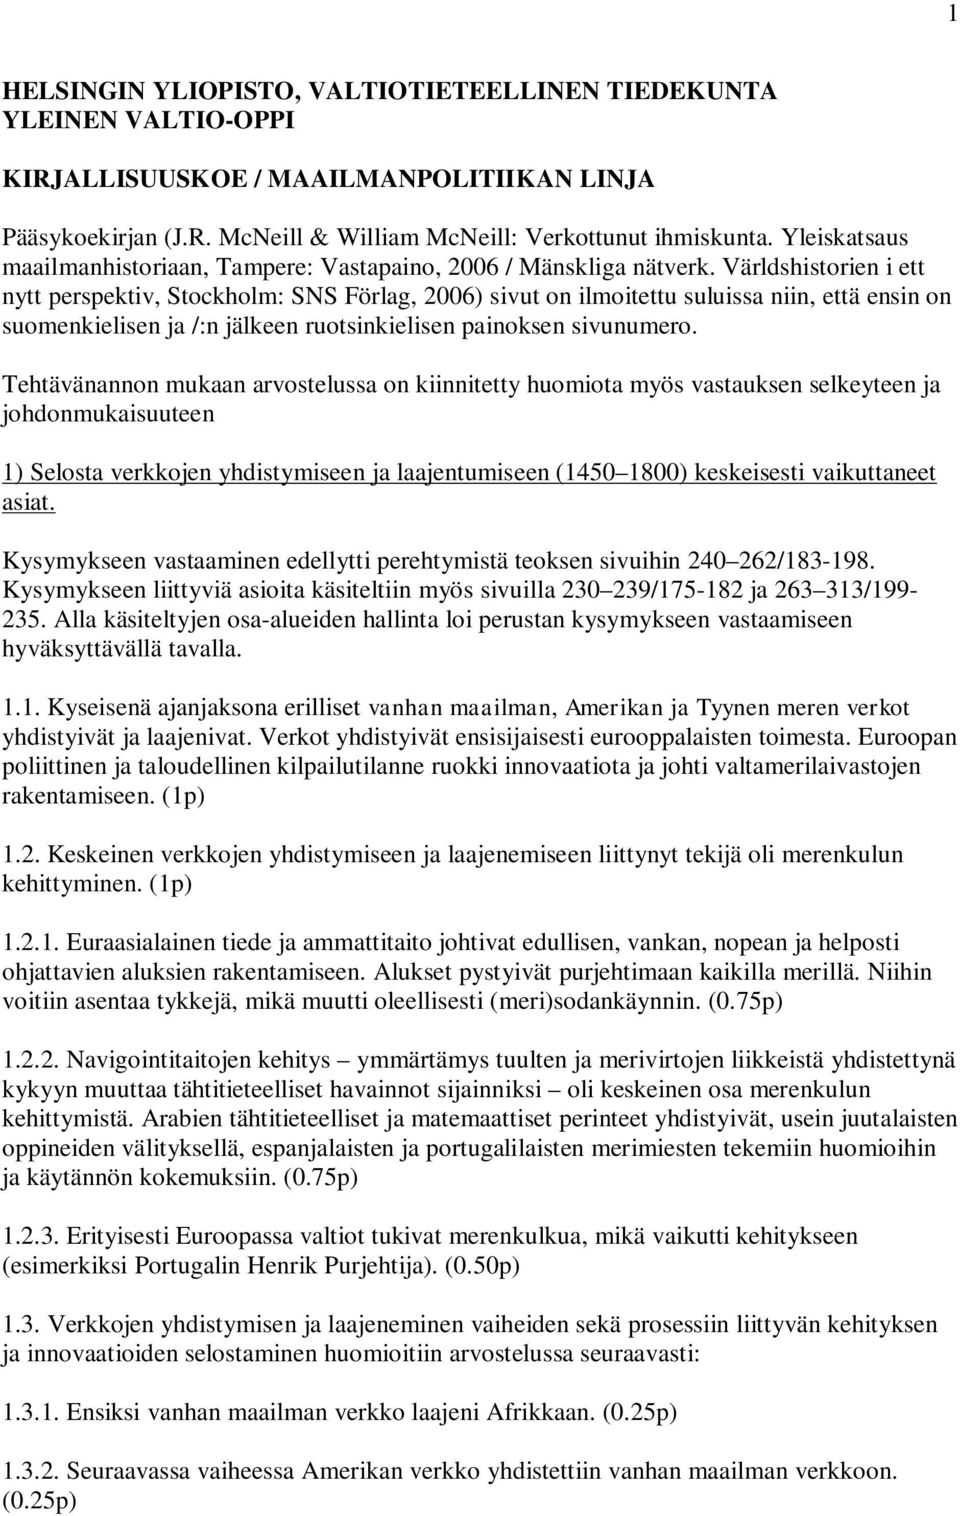 Världshistorien i ett nytt perspektiv, Stockholm: SNS Förlag, 2006) sivut on ilmoitettu suluissa niin, että ensin on suomenkielisen ja /:n jälkeen ruotsinkielisen painoksen sivunumero.